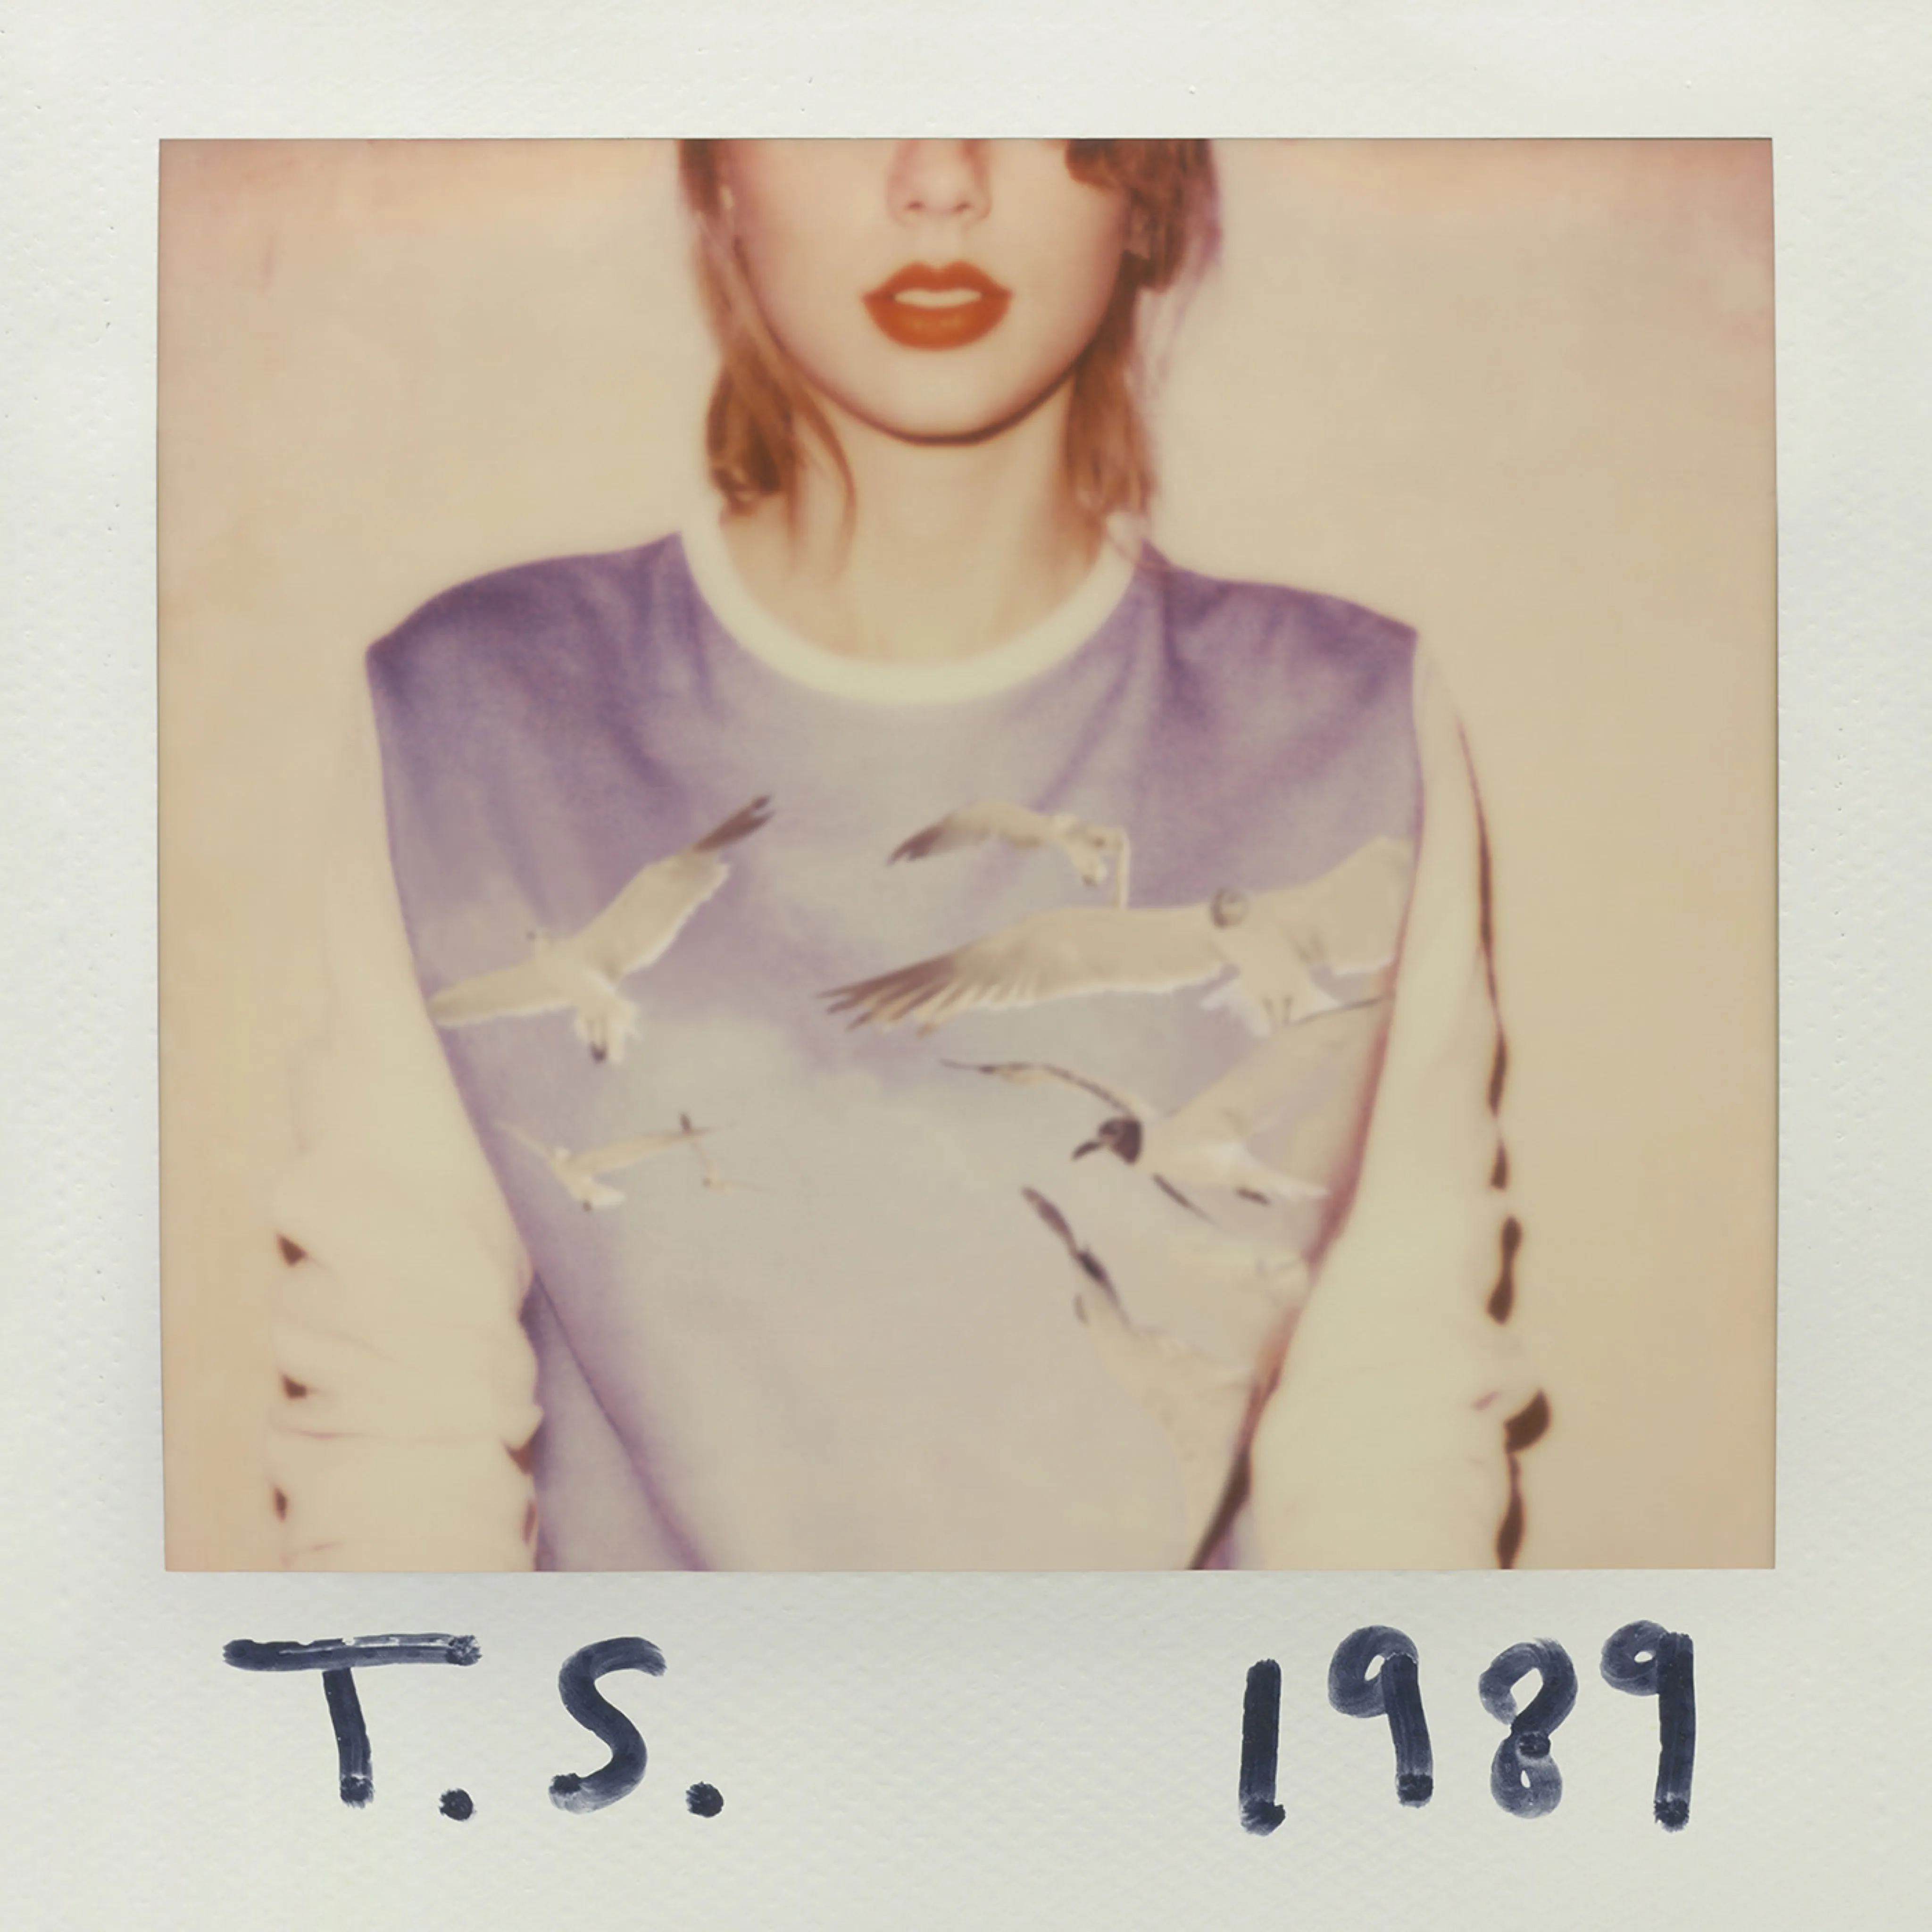 '1989' album cover